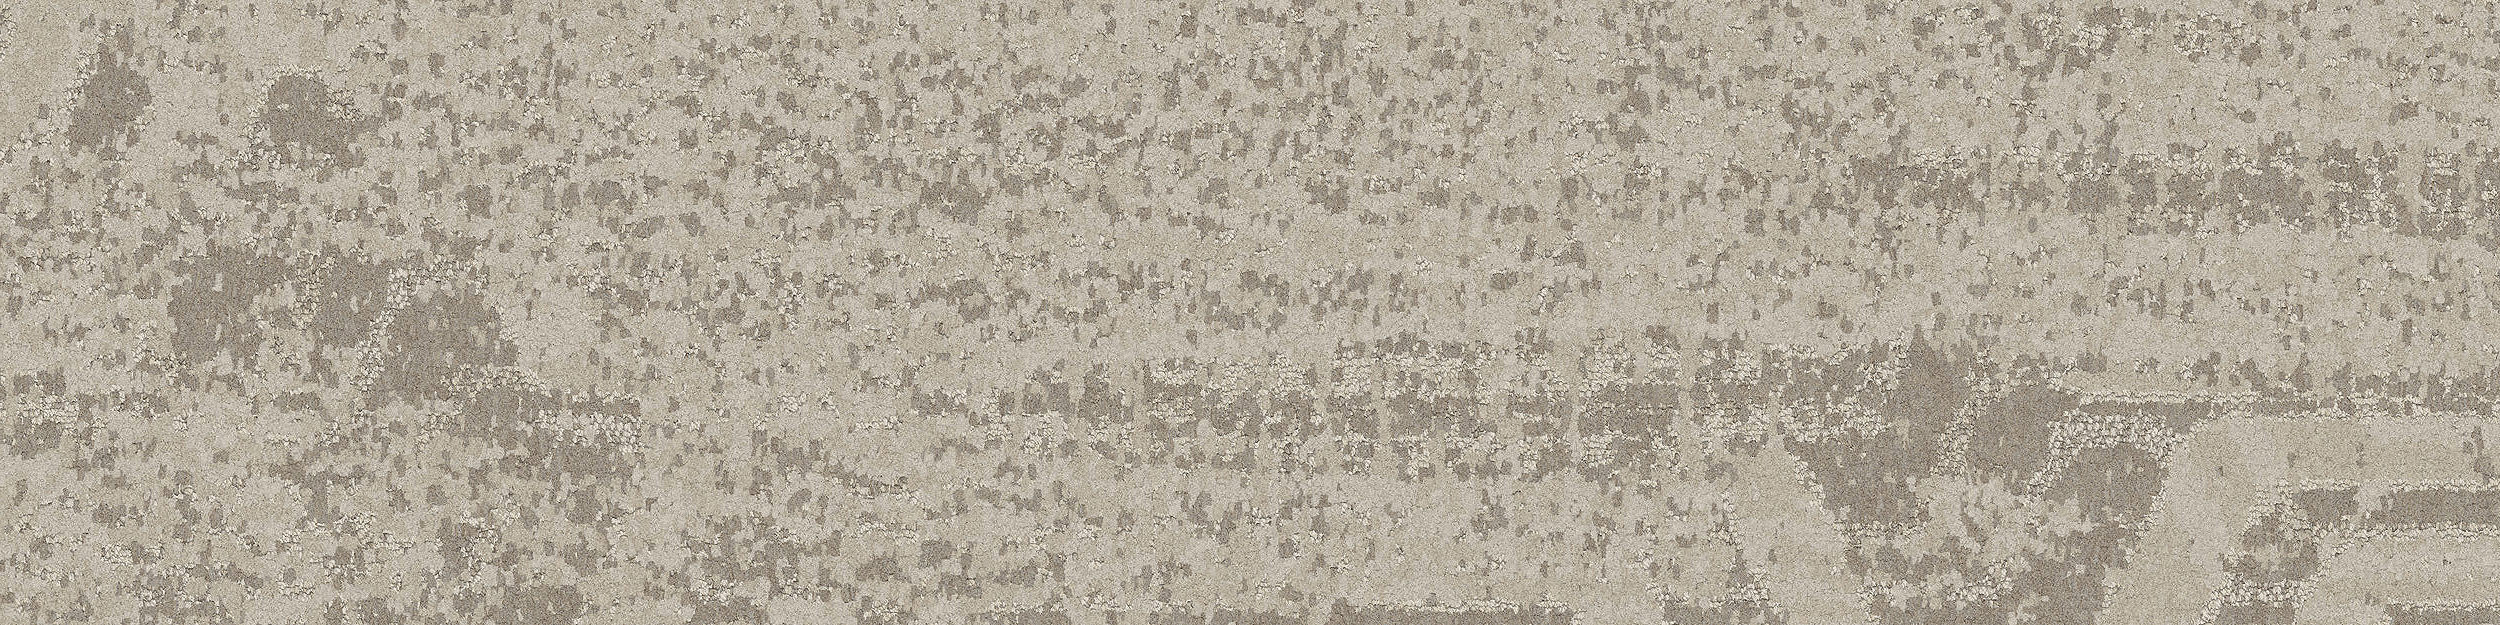 PM17 Carpet Tile in Ecru image number 3